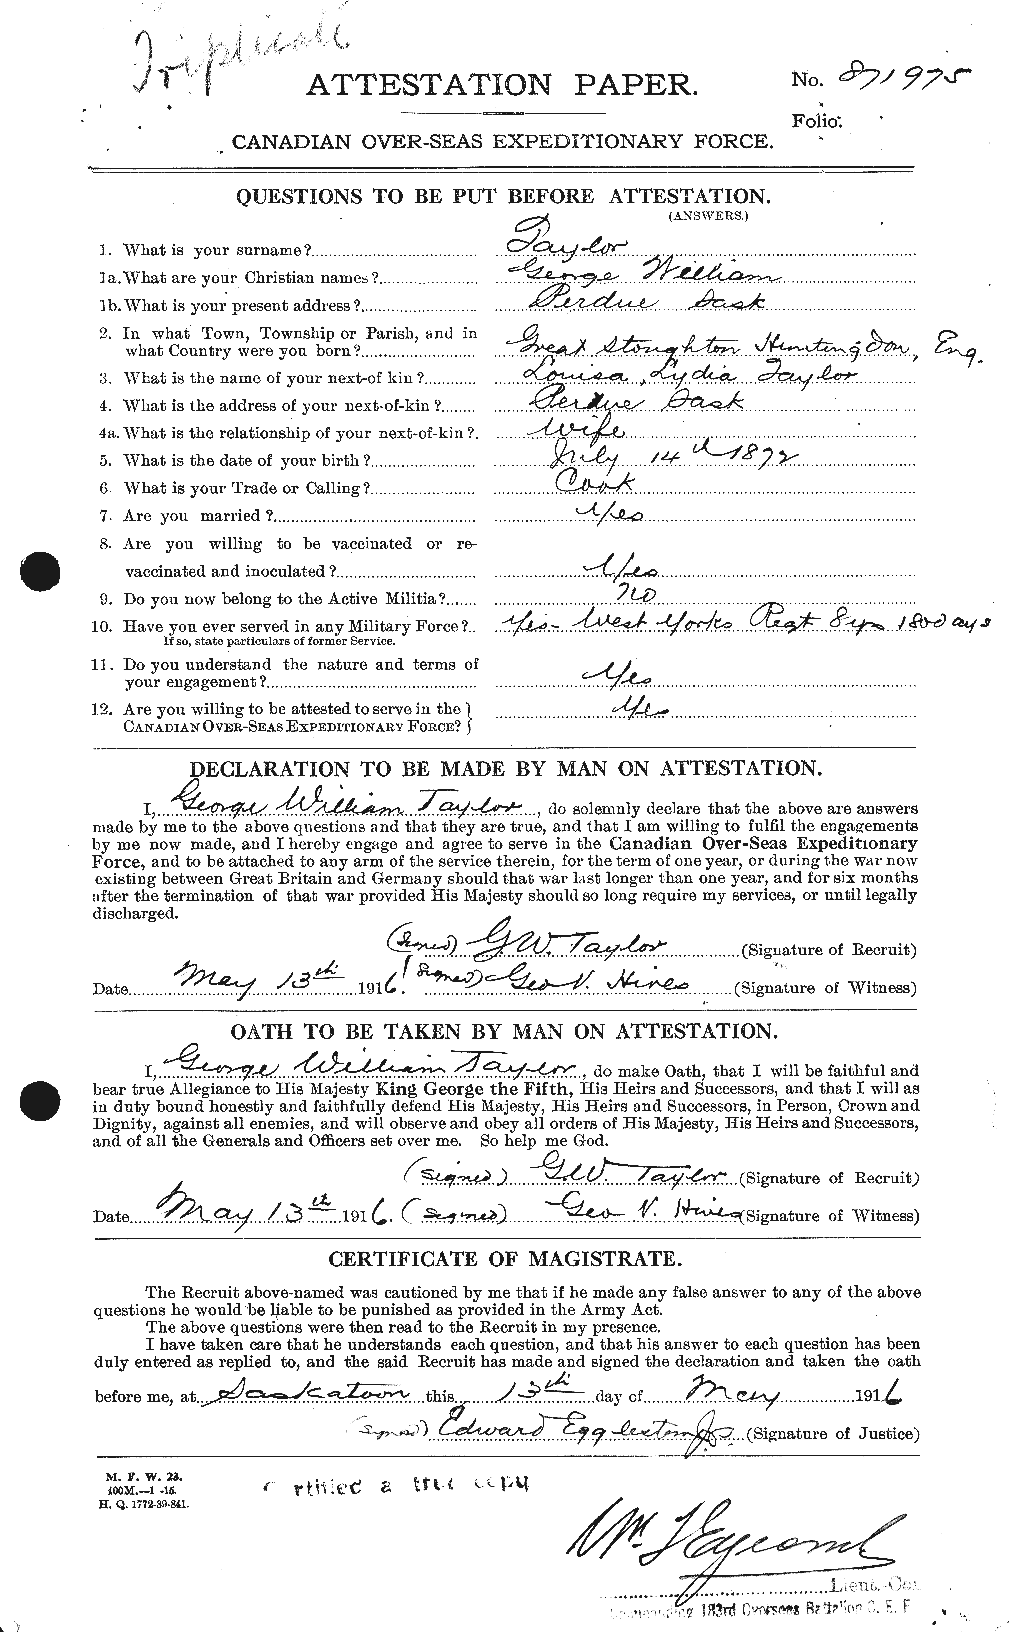 Dossiers du Personnel de la Première Guerre mondiale - CEC 626366a